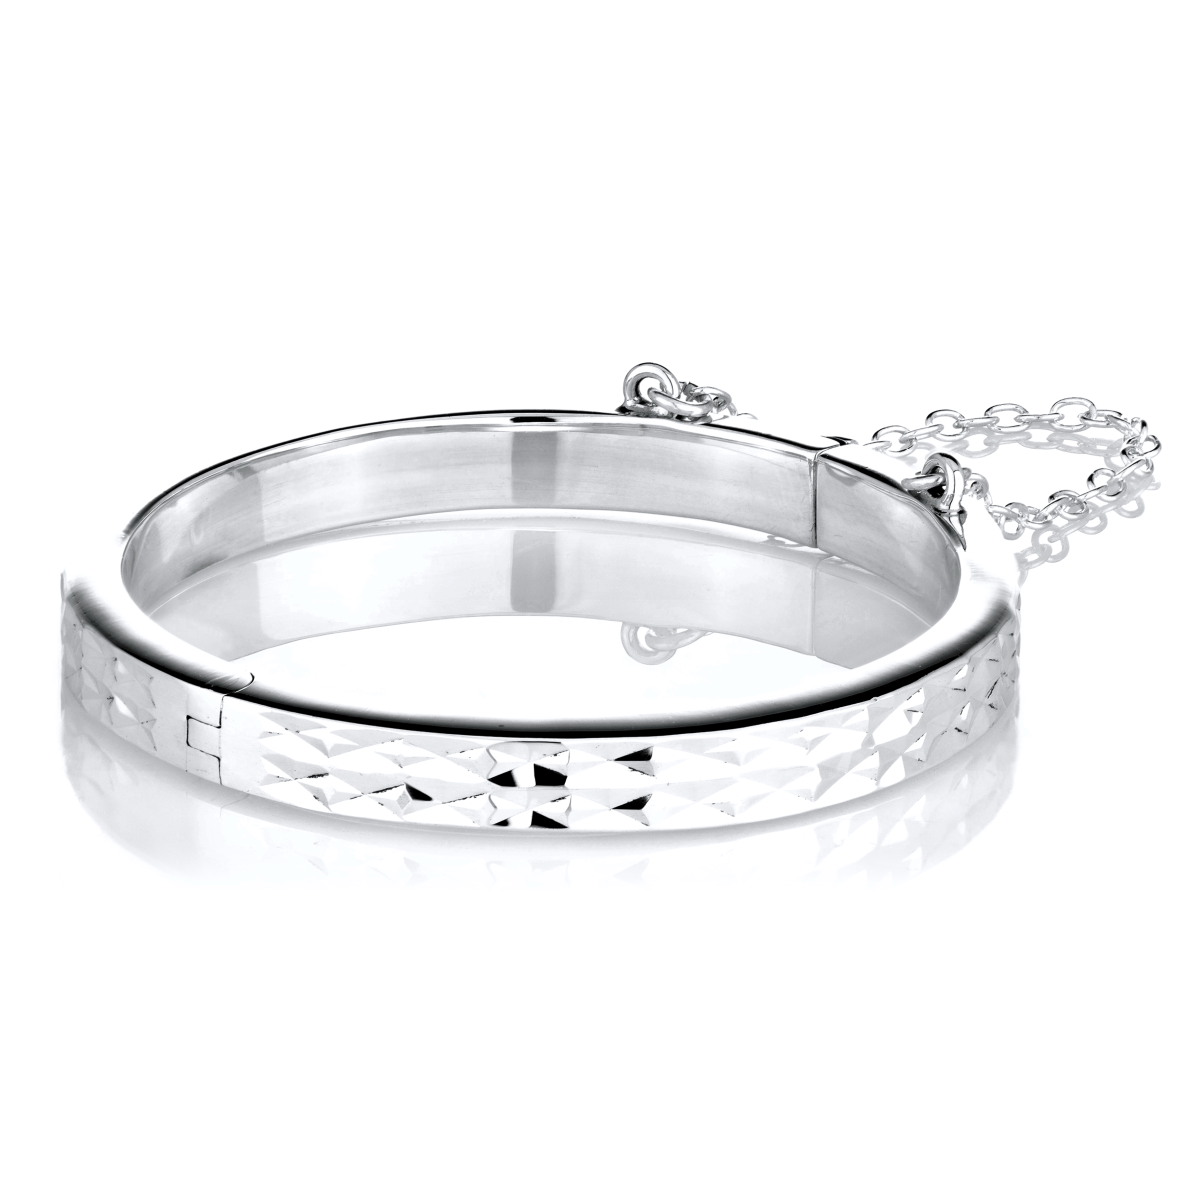 silver bangle bracelet emmau0027s hammered silvertone baby bangle bracelet - 46 mm WBXAVIV